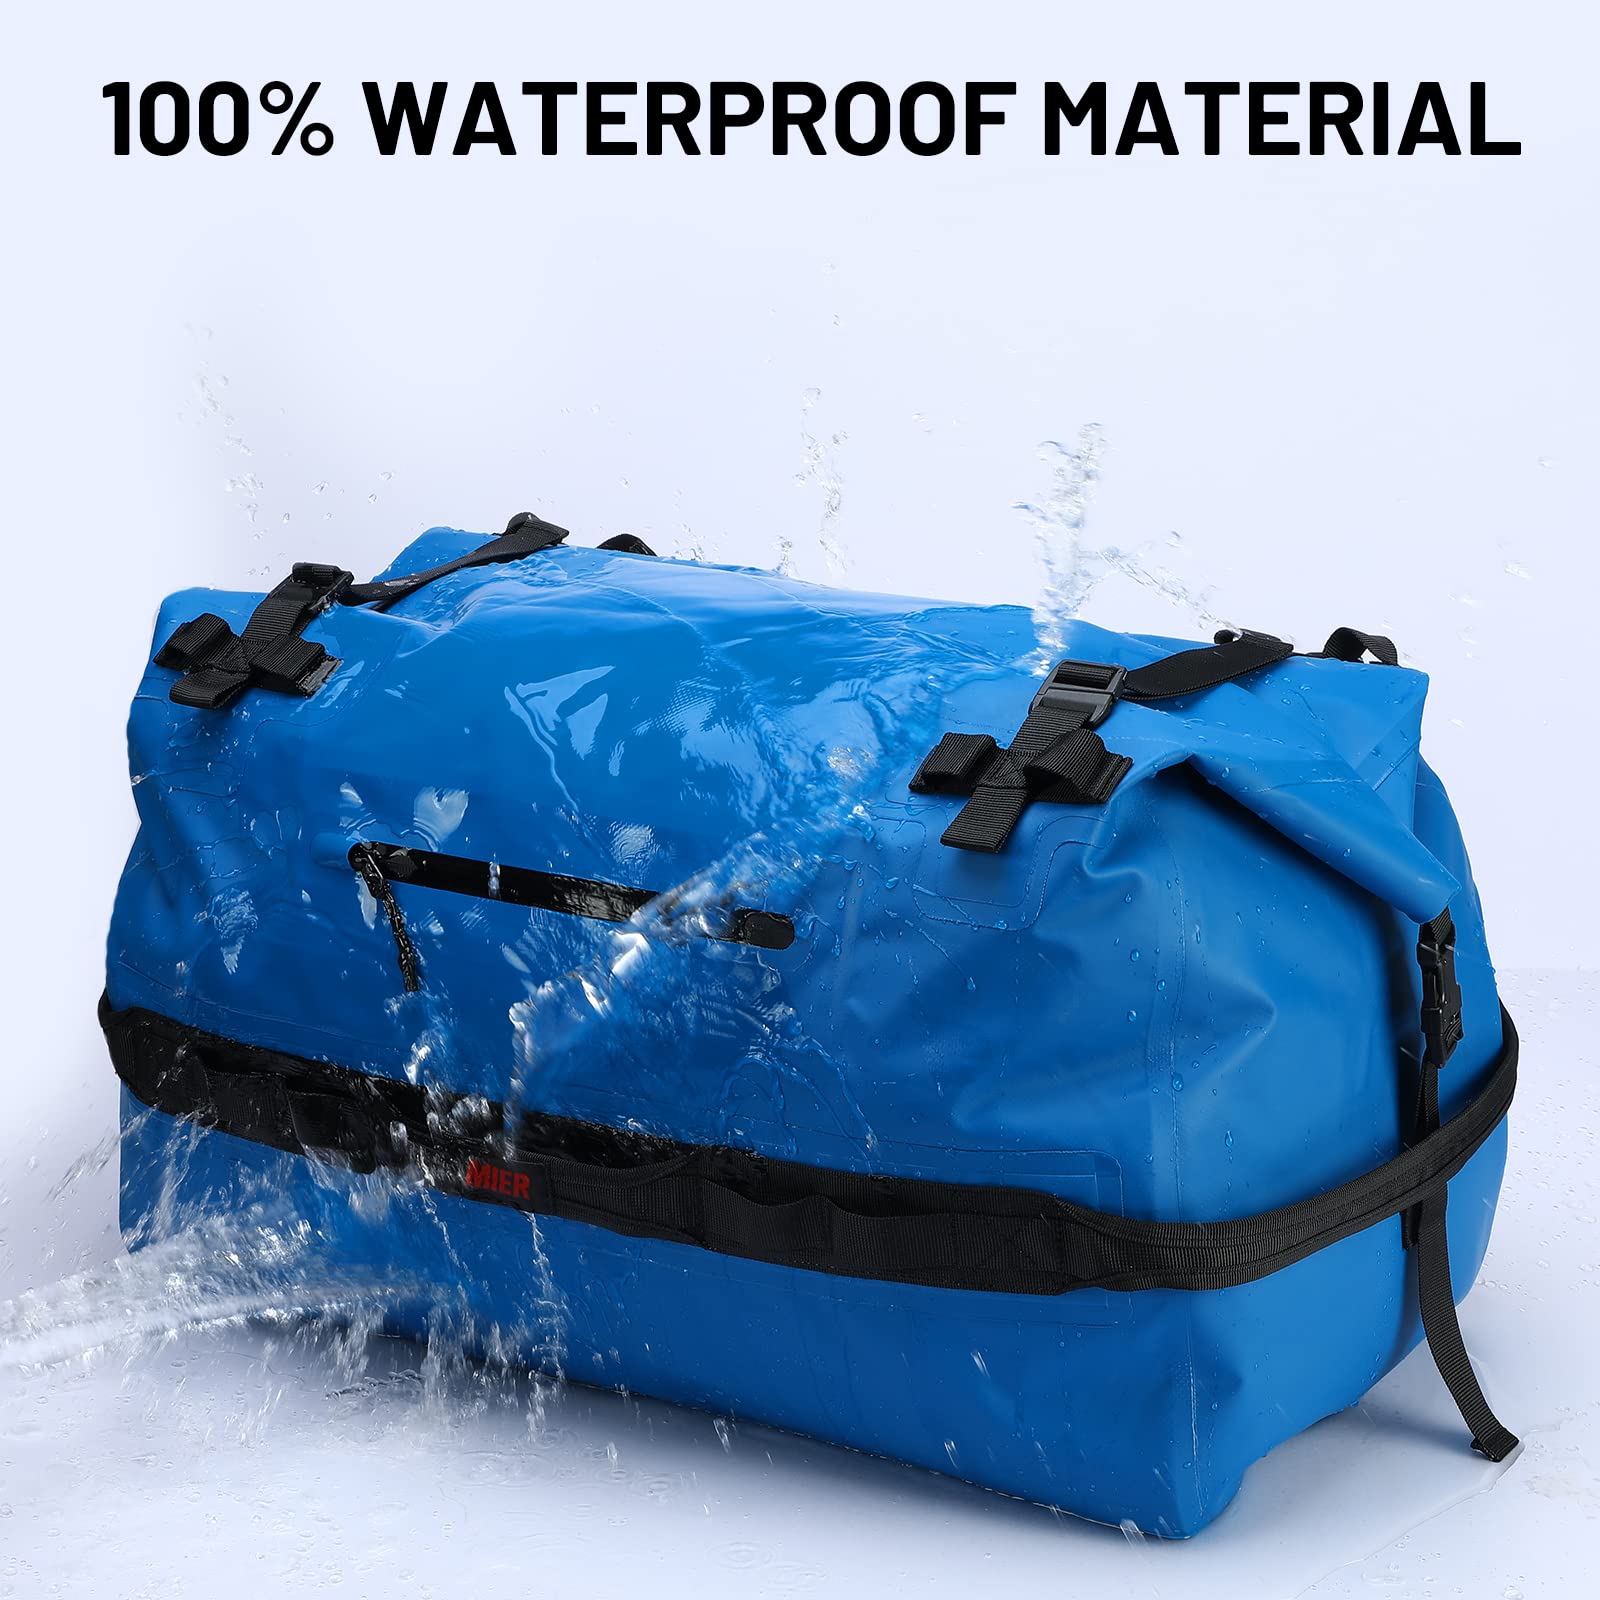 The Best Waterproof Bags for Men - Men's Journal